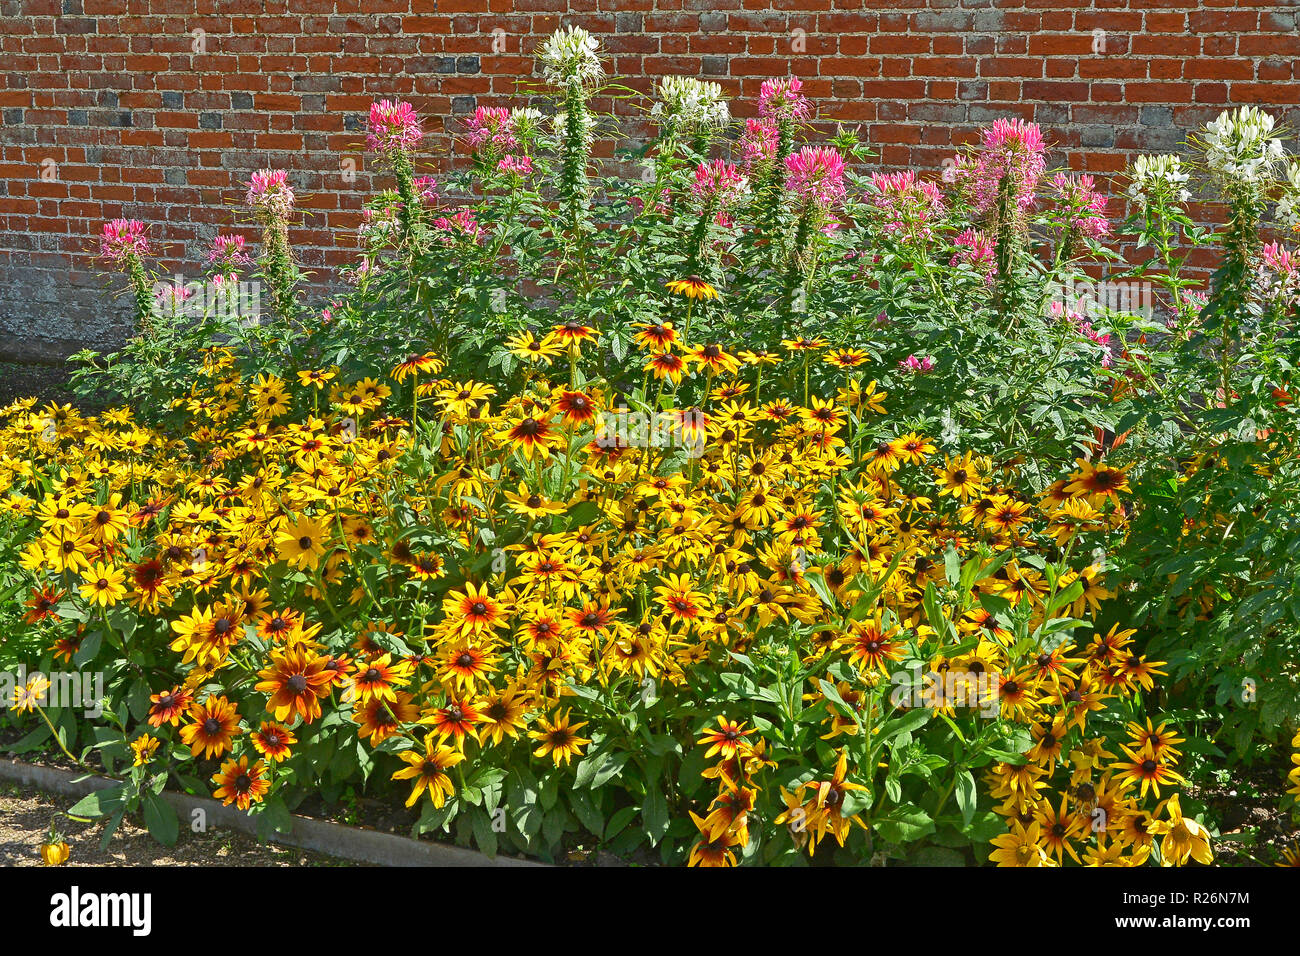 Nahaufnahme einer Blüte Grenze mit Heleniums, Cleome hassleriana Rudbeckien und in einem ummauerten Garten Stockfoto